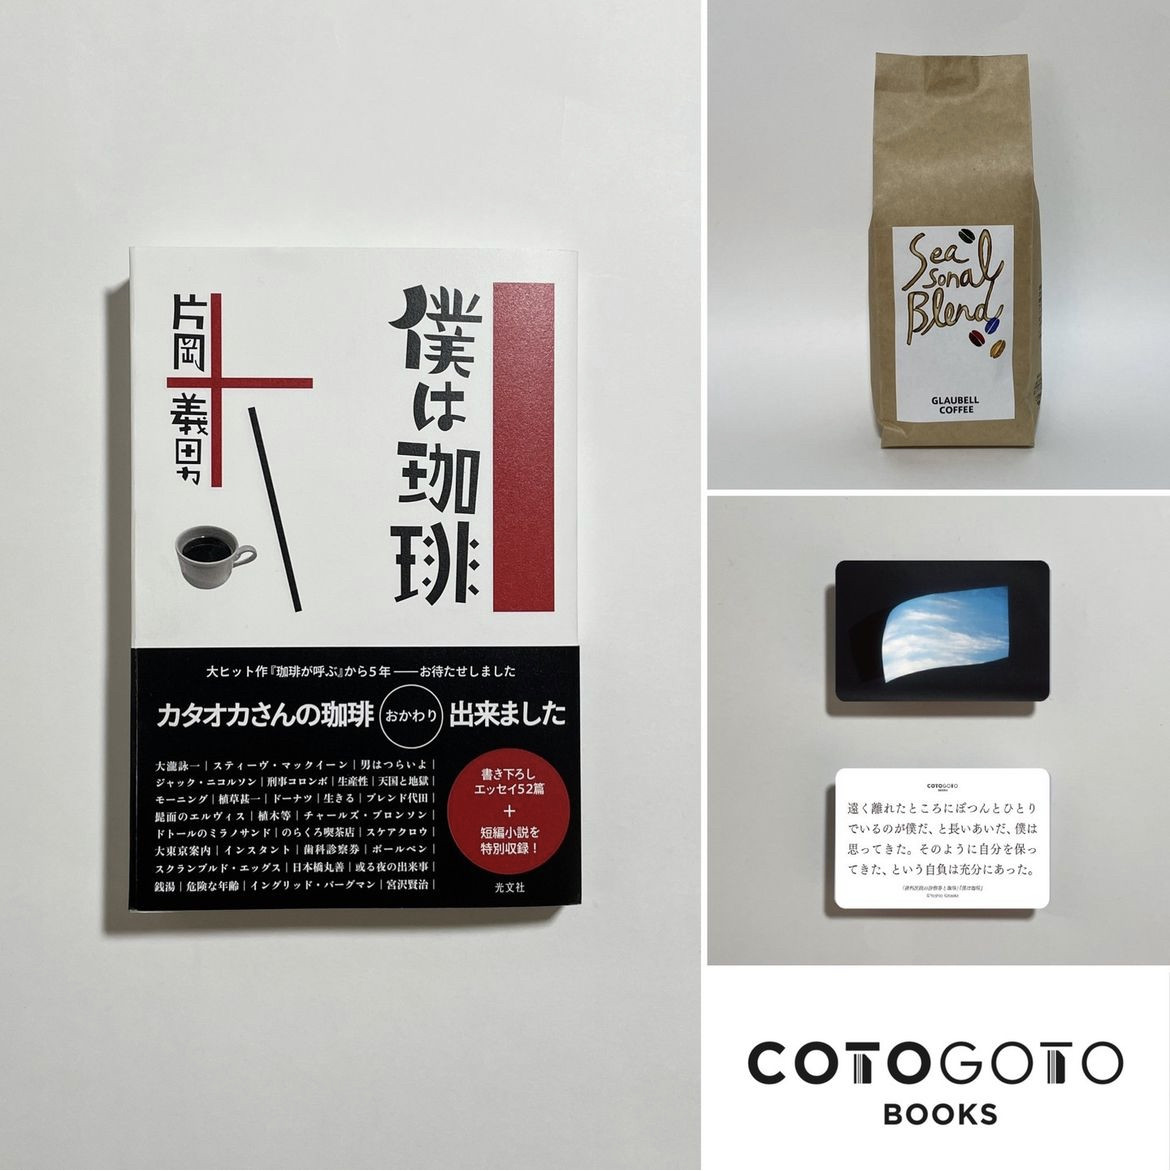 ●片岡義男さんの新刊エッセー『僕は珈琲』と片岡さんの為に作ったブレンドの販売ページ（cotogotobooksさんにて）